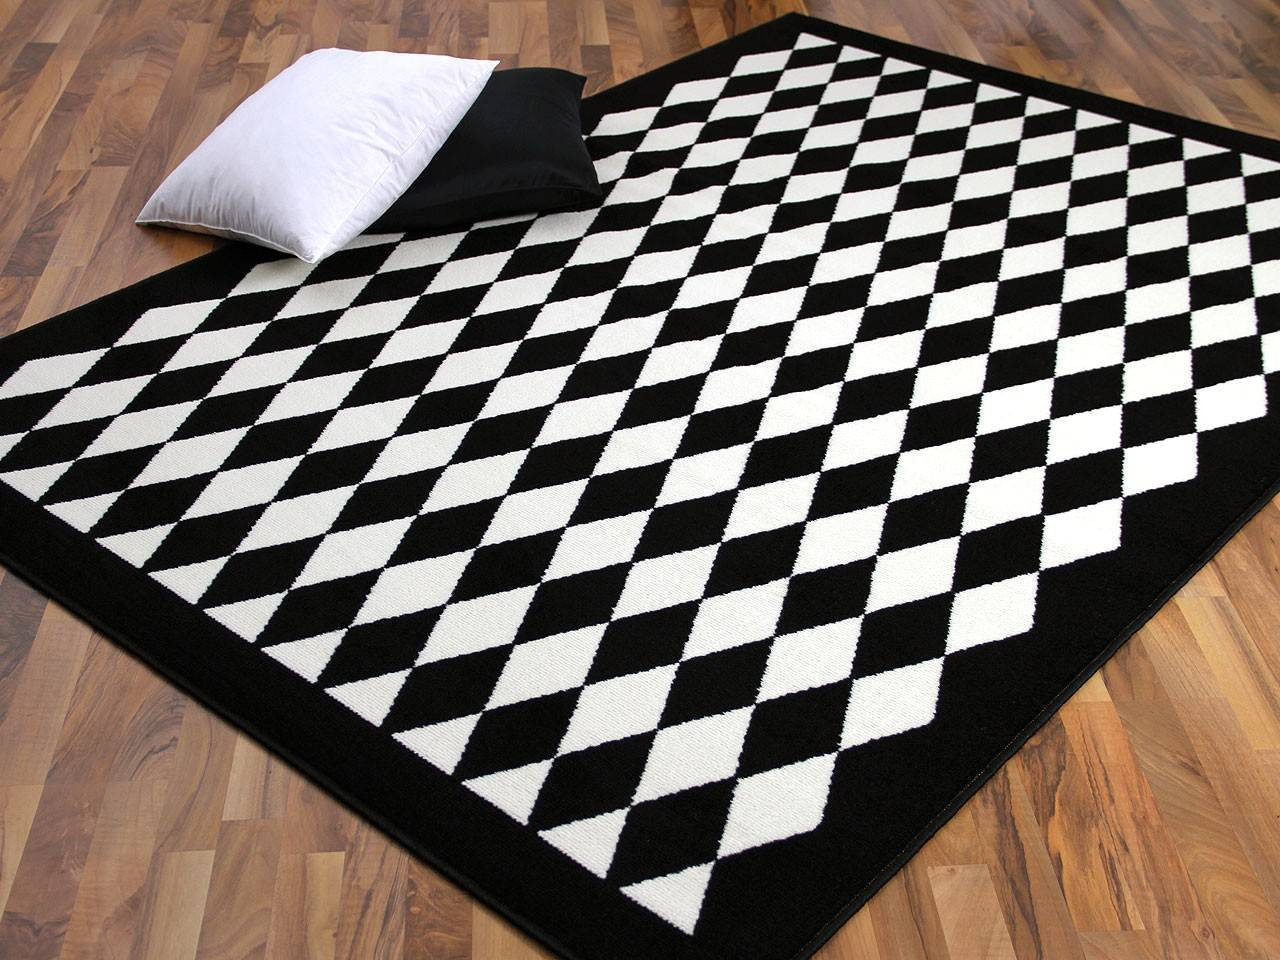 Teppich Schwarz Weiß
 Teppich Schwarz Weiss Muster